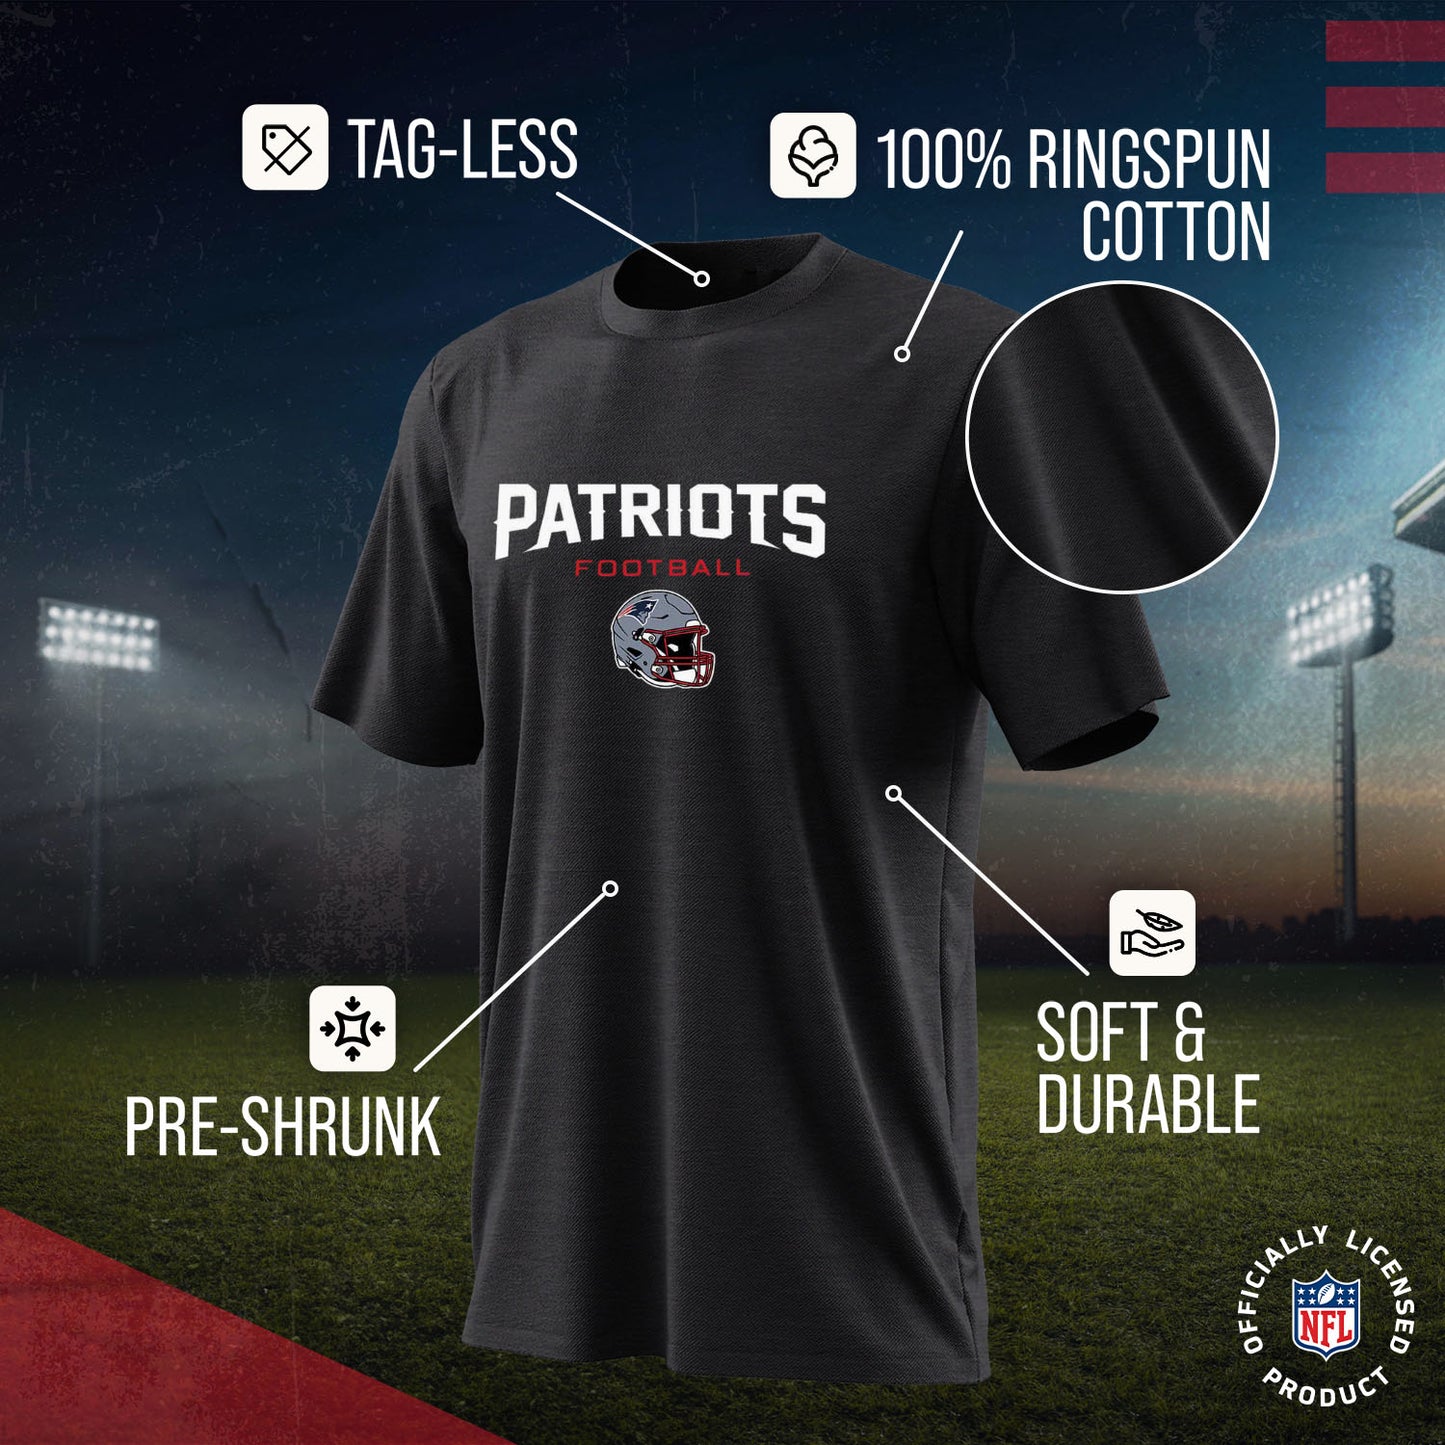 New England Patriots NFL Adult Football Helmet Tagless T-Shirt - Charcoal